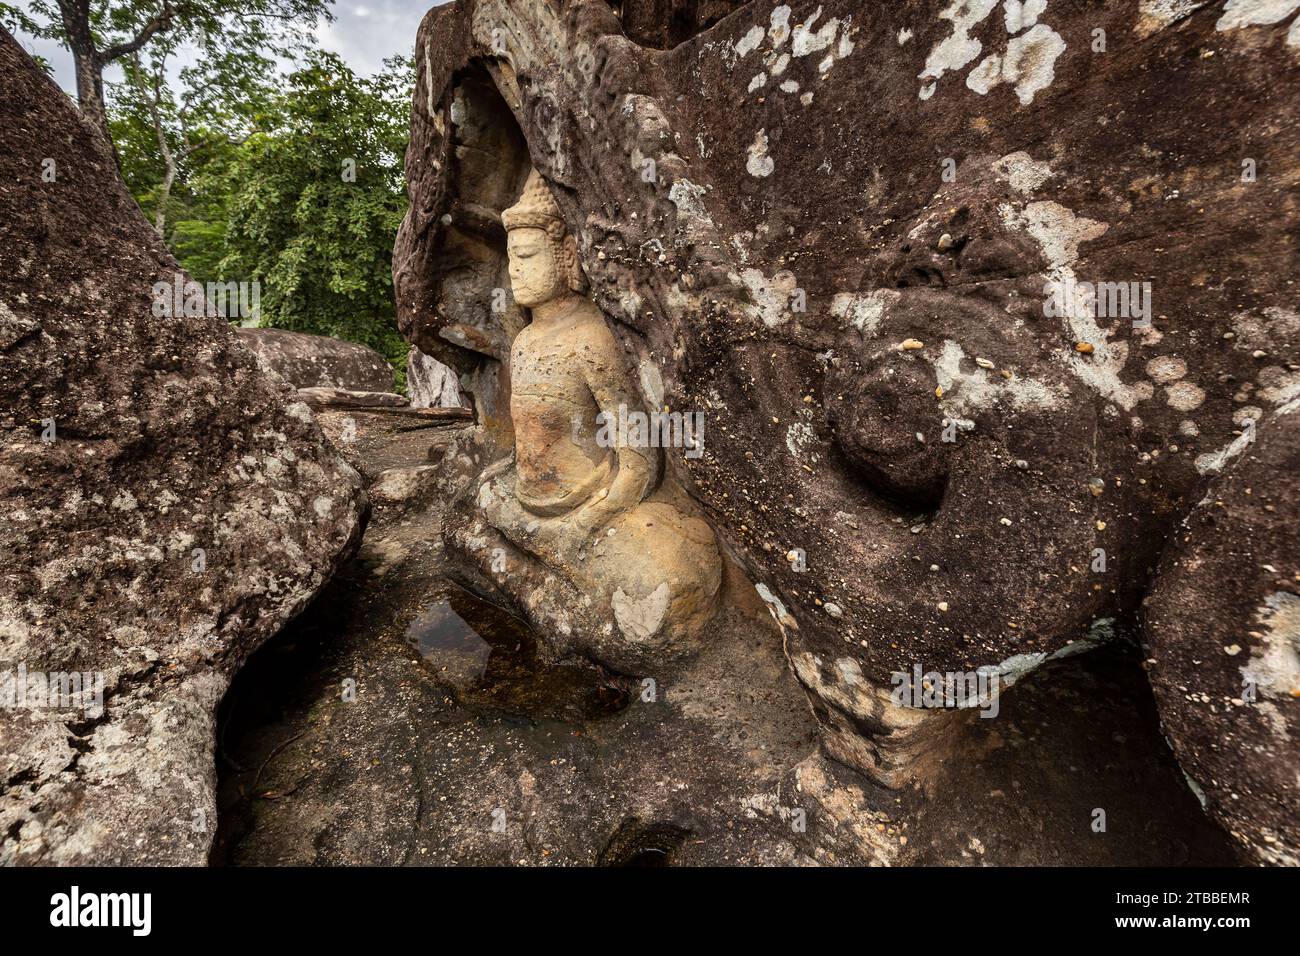 Parco storico Phu Phra Bat, statue di Buddha scolpite nella roccia presso il santuario naturale, Ban Phue, Udon Thani, Isan, Thailandia, sud-est asiatico, Asia Foto Stock